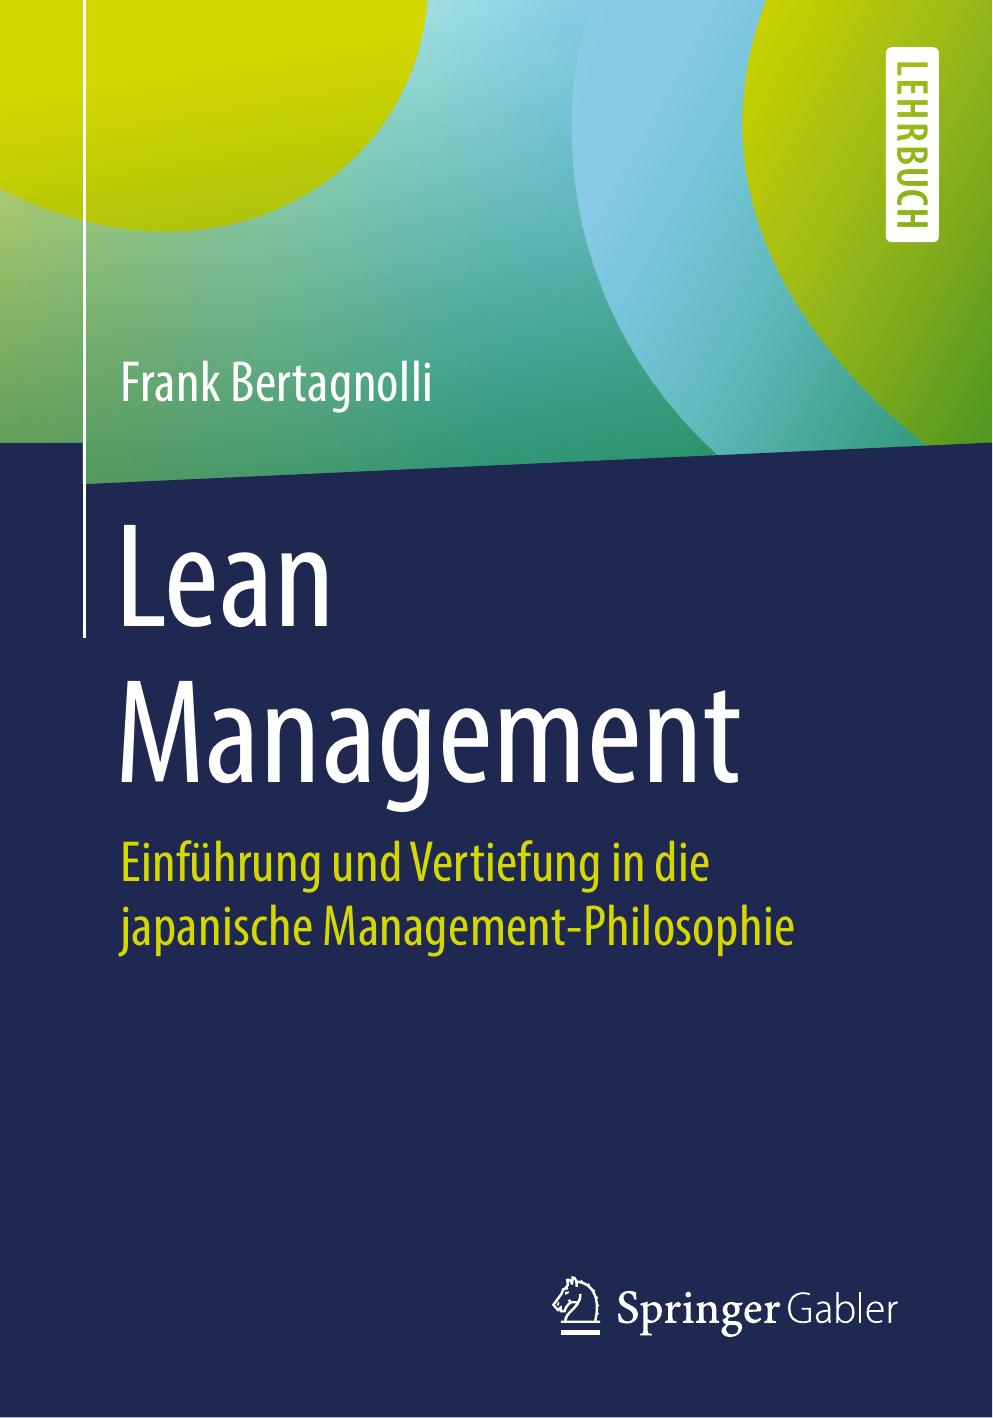 Lean Management: Einführung und Vertiefung in die japanische Management-Philosophie